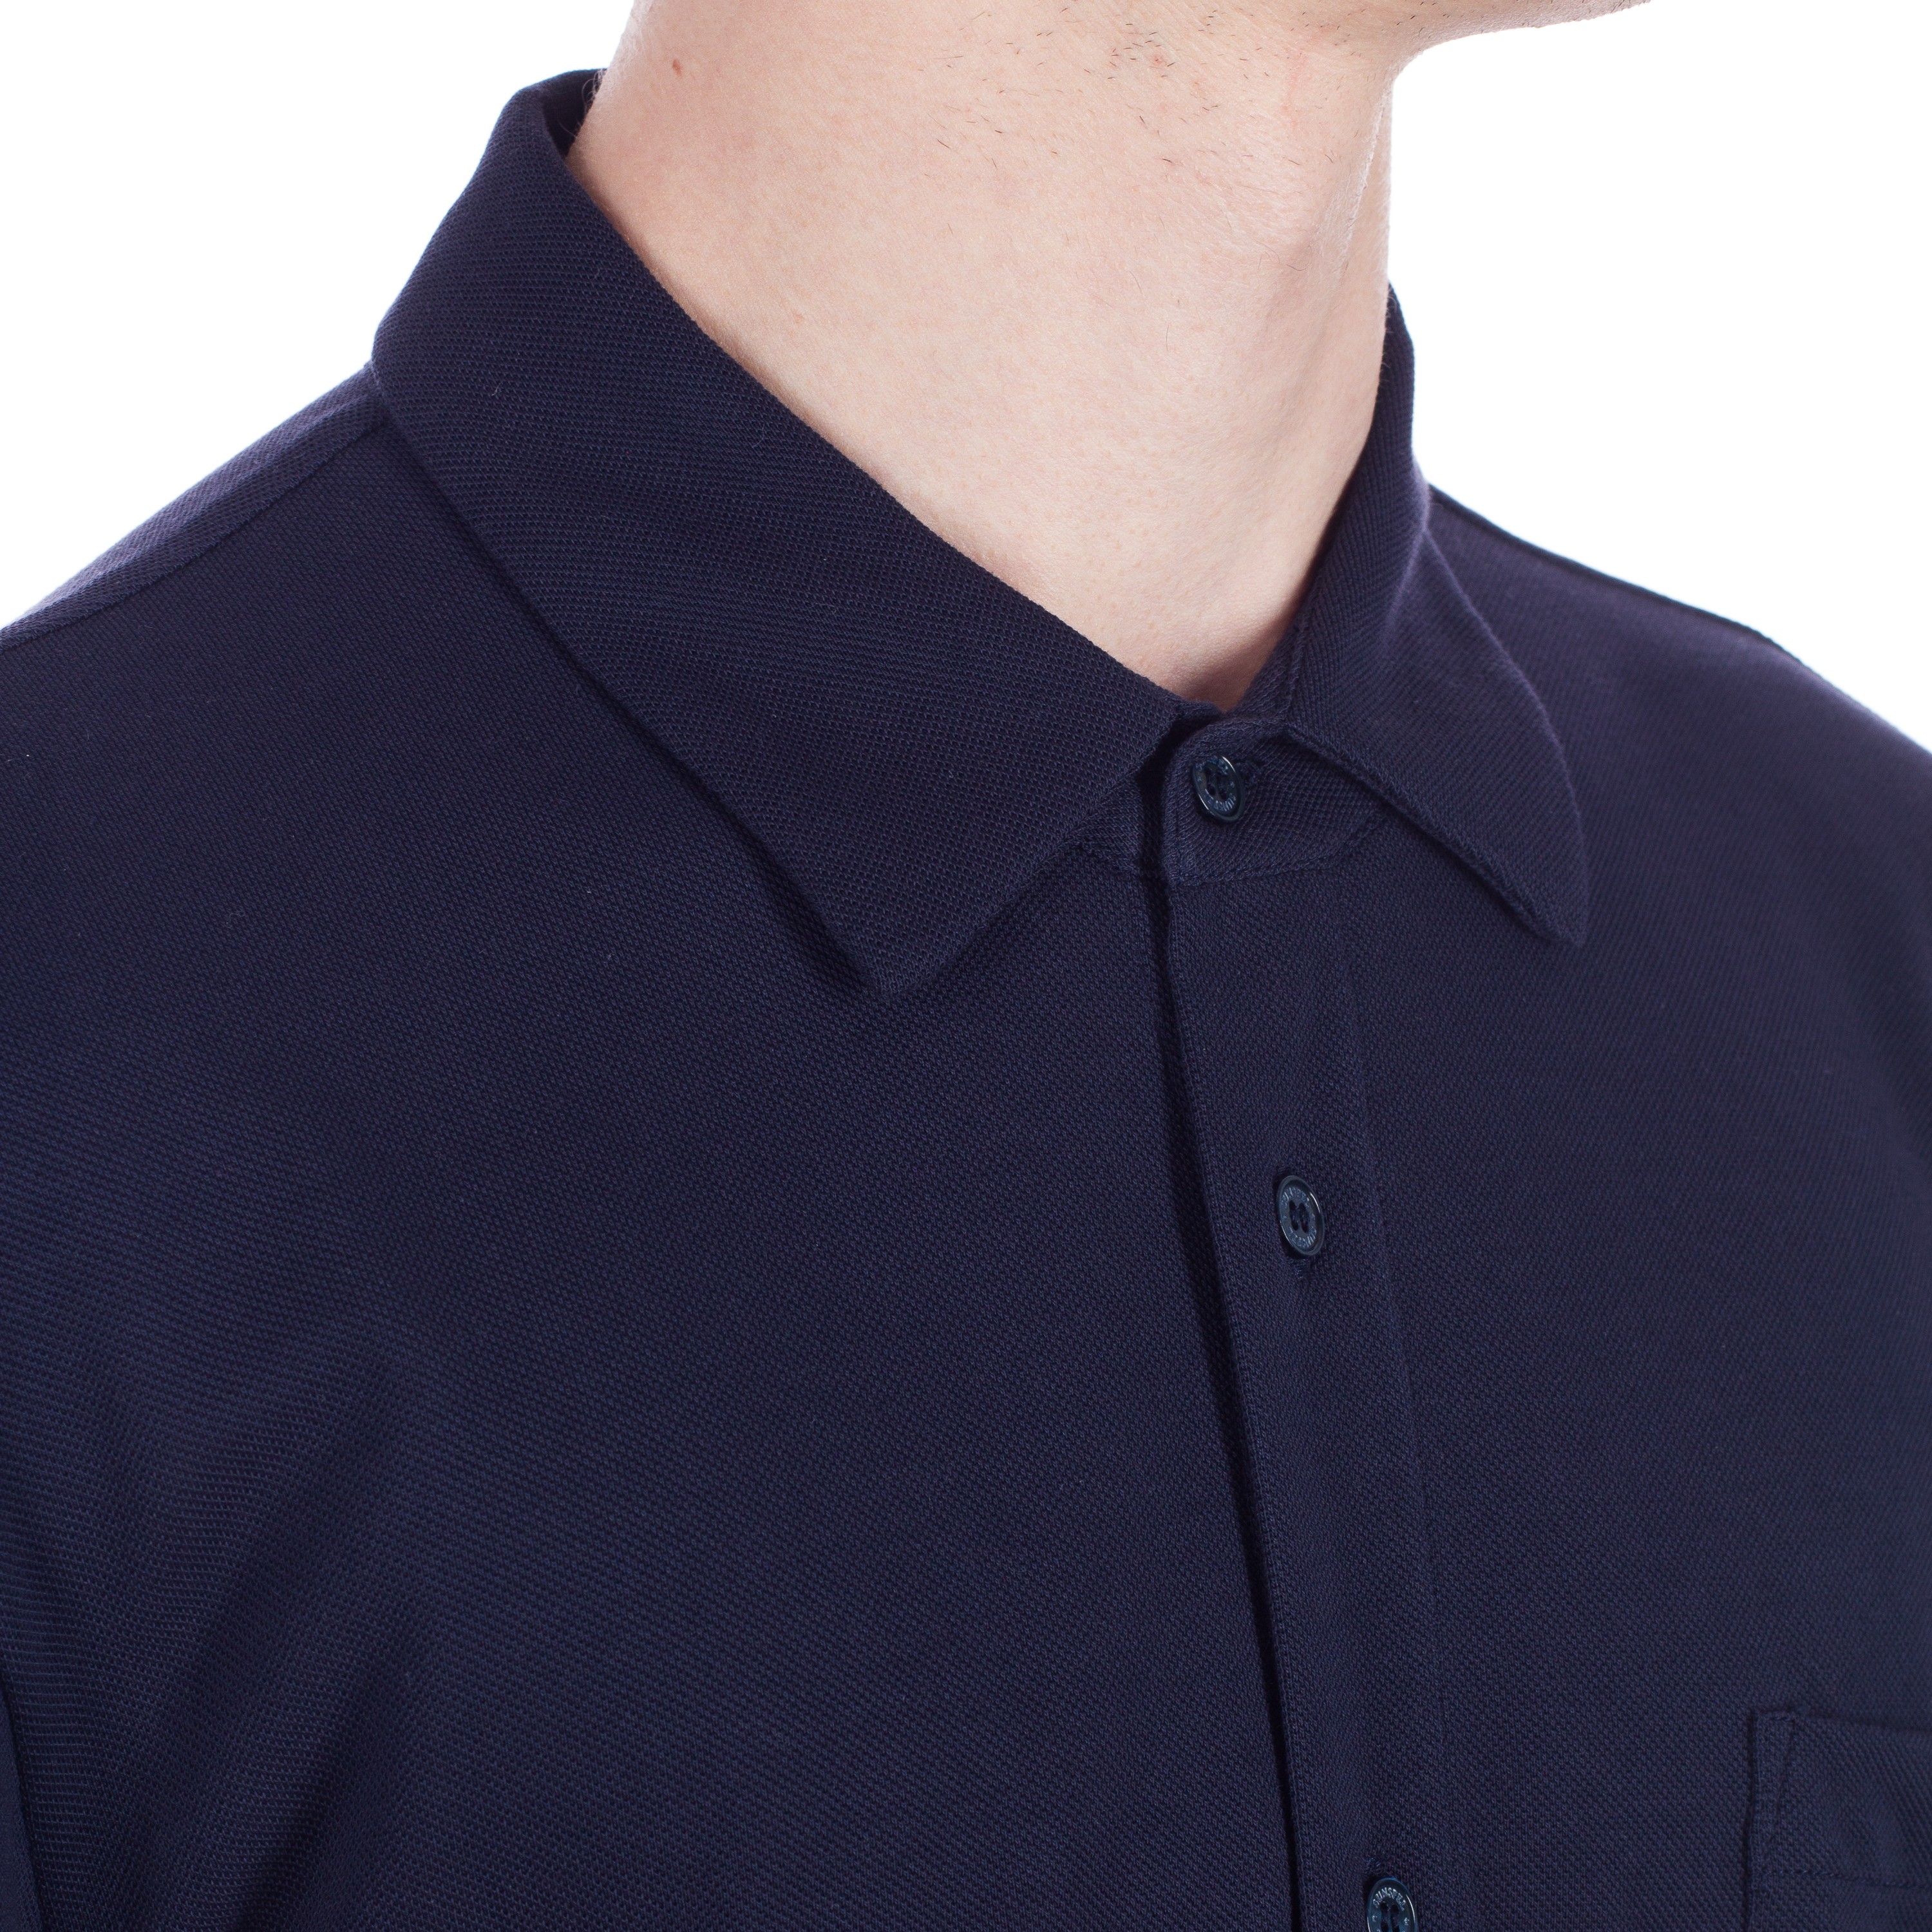 Sunspel Pique Shirt (Navy) - Consortium.